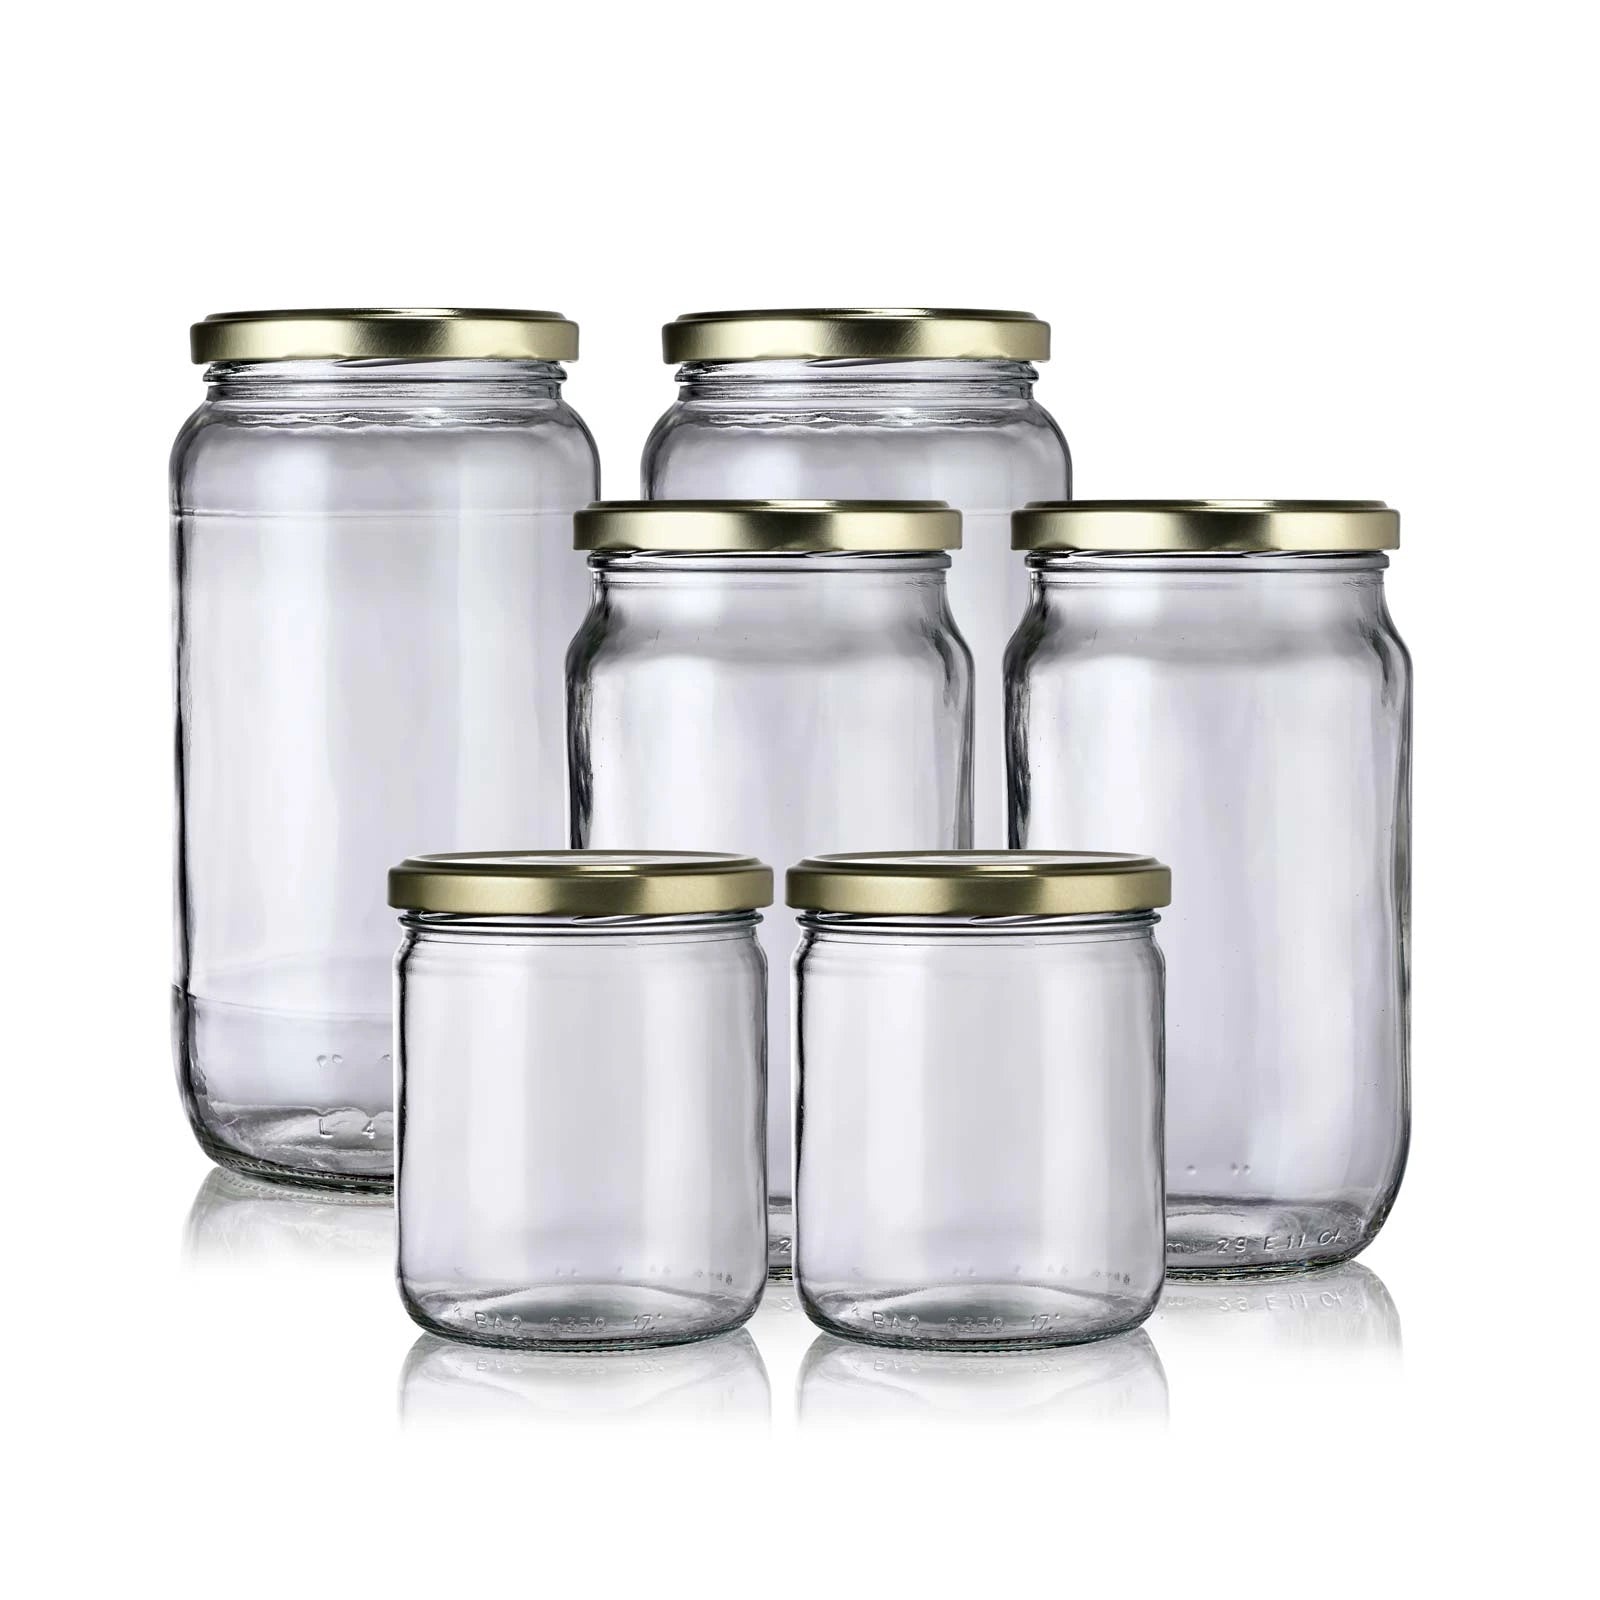 Bocaux verre Boite conservation alimentaire Pot conservation verre Pot verre  4052025432256